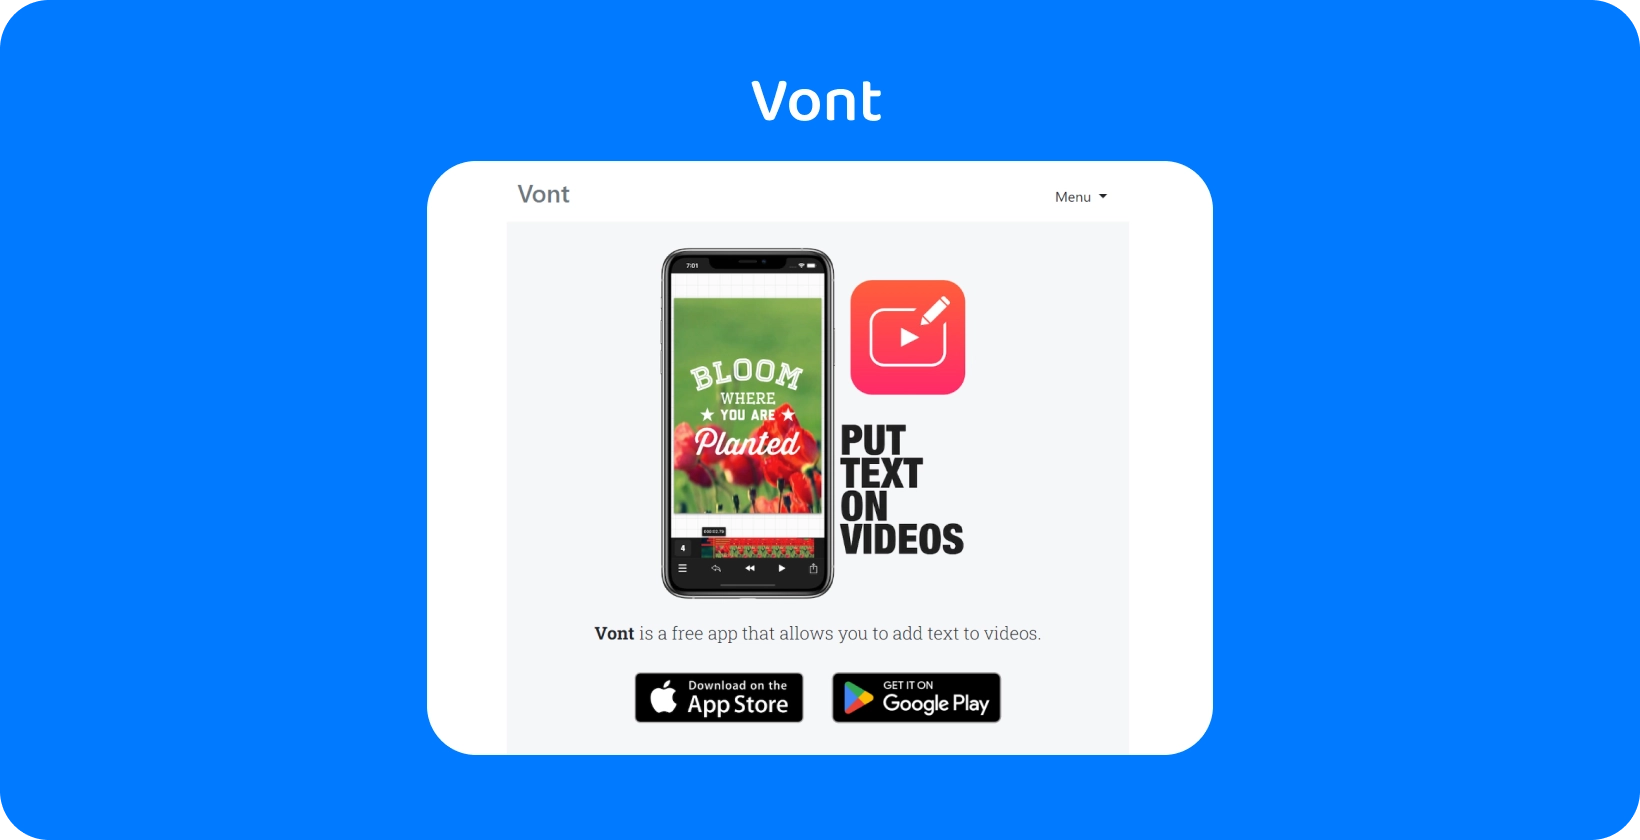 Smartfon wyświetlający interfejs aplikacji Vont, podkreślający jego funkcję dodawania tekstu do filmów, dostępny w App Store i Google Play